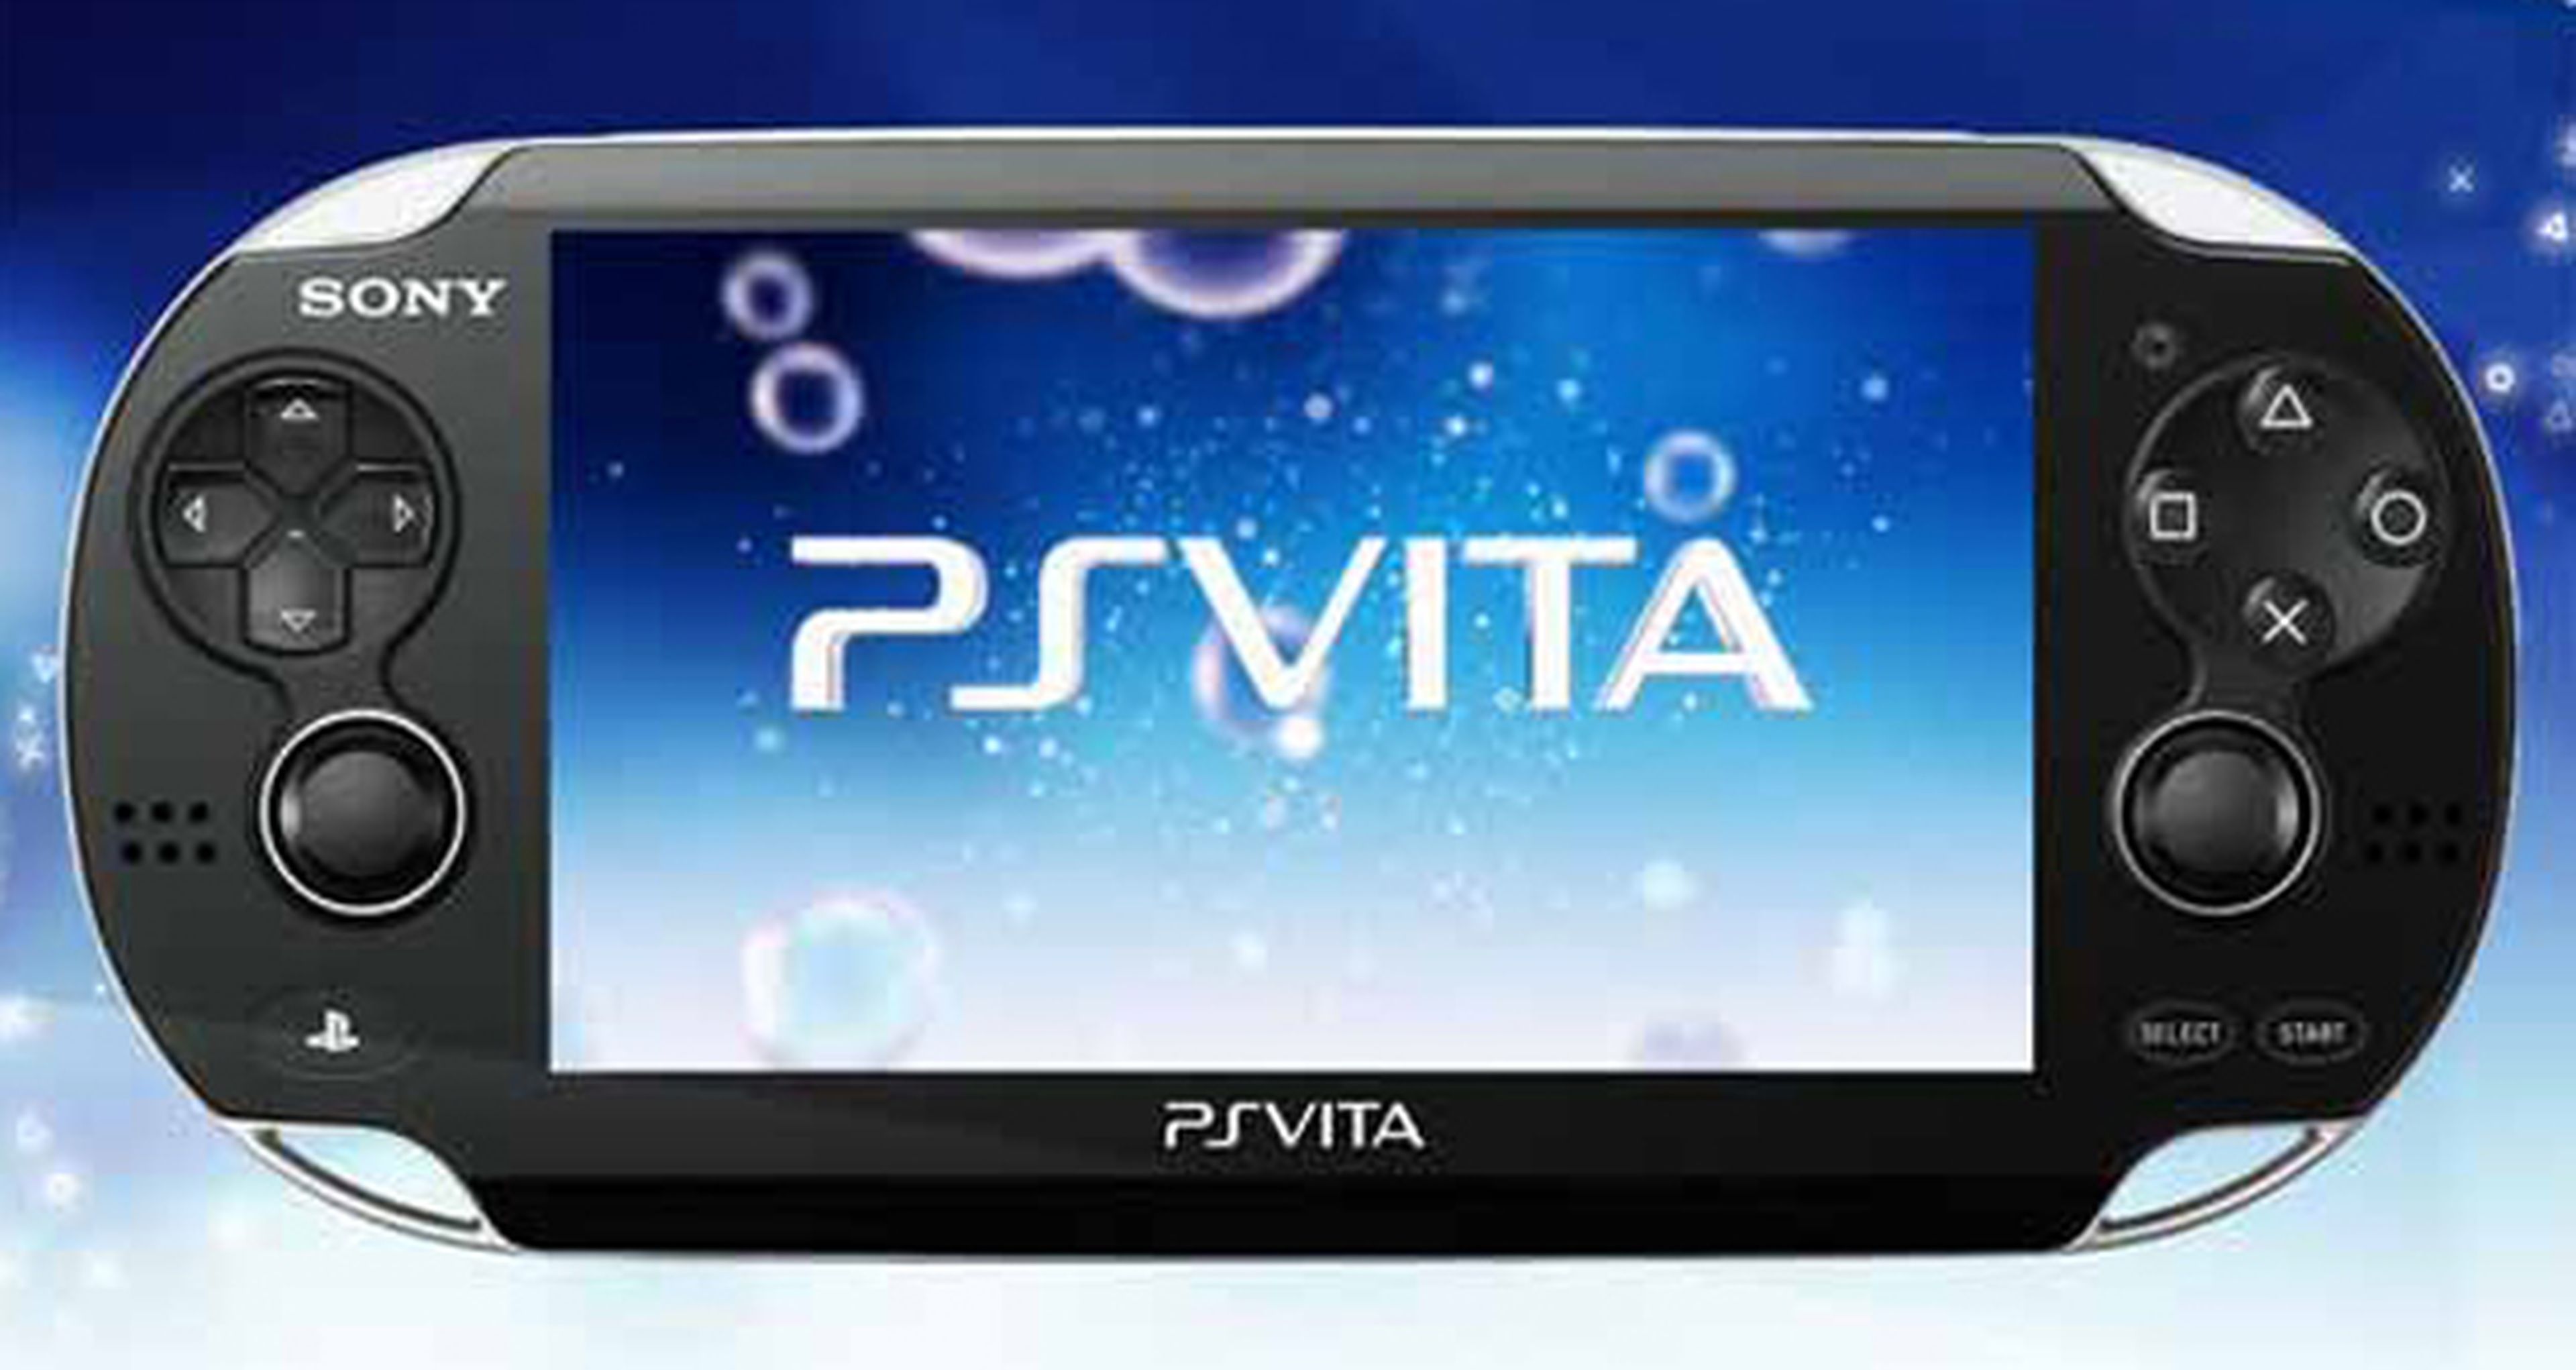 Nuevos diseños para PS Vita